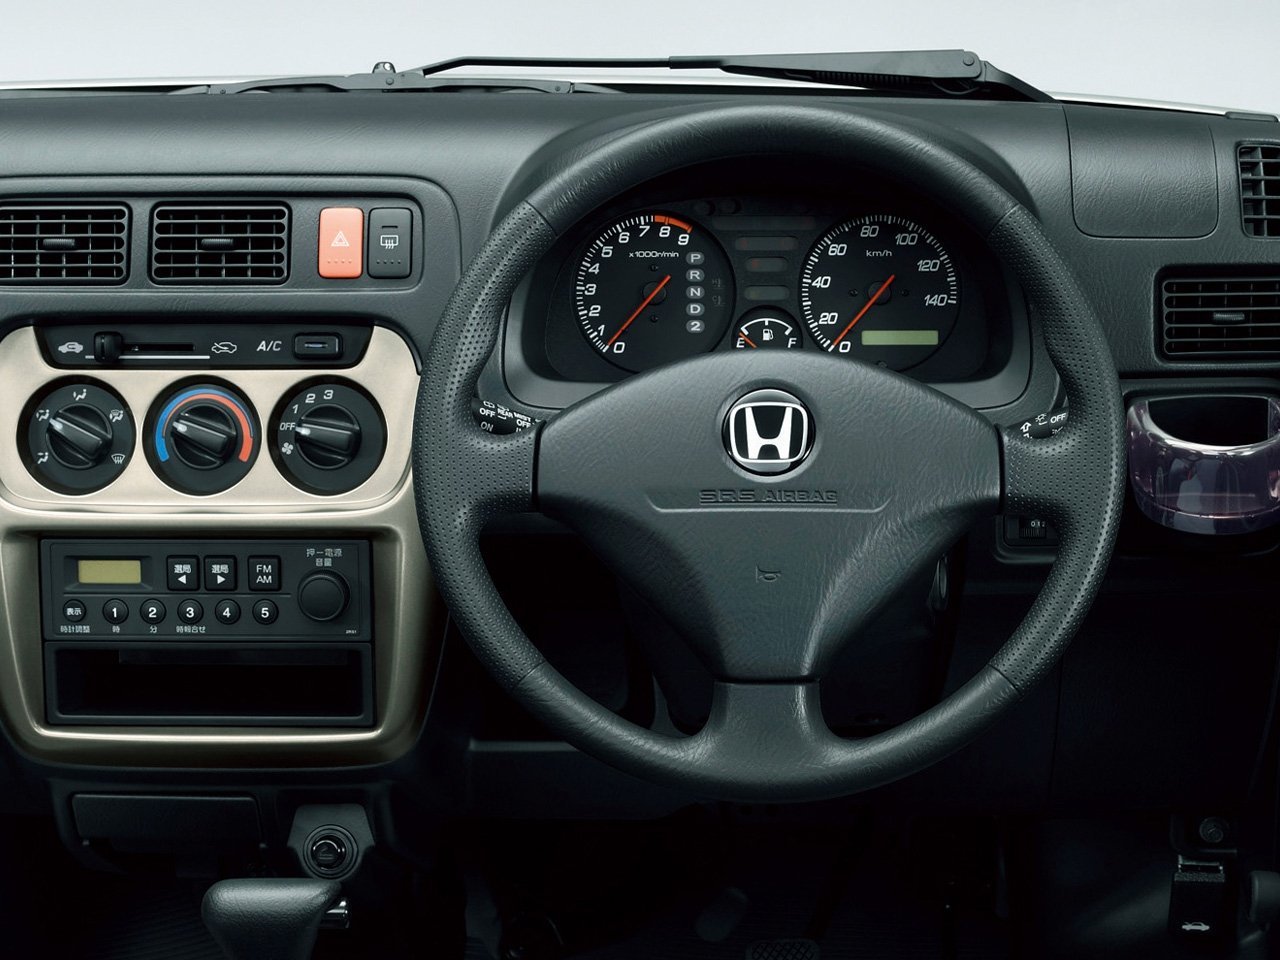 минивэн Honda Acty 1999 - 2016г выпуска модификация 0.7 MT (46 л.с.) 4×4